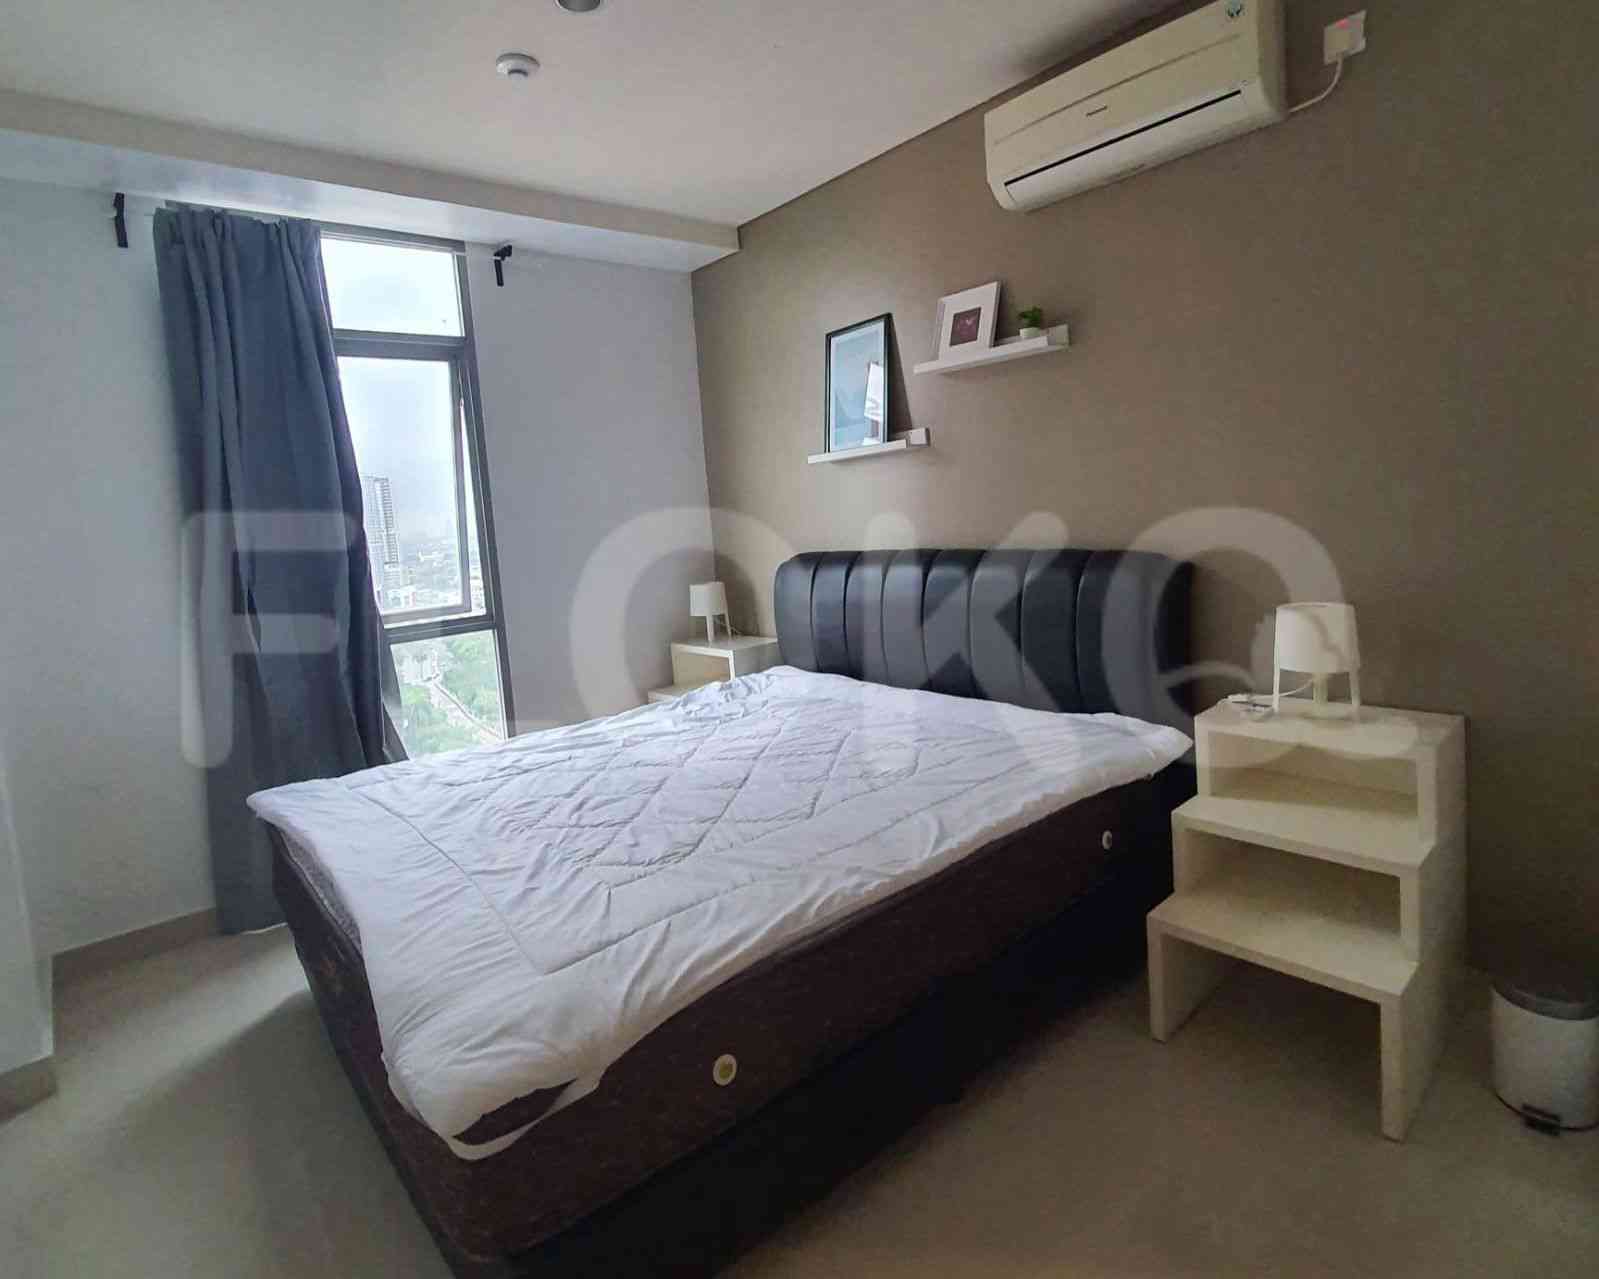 1 Bedroom on 15th Floor for Rent in Pejaten Park Residence - fpe66f 4